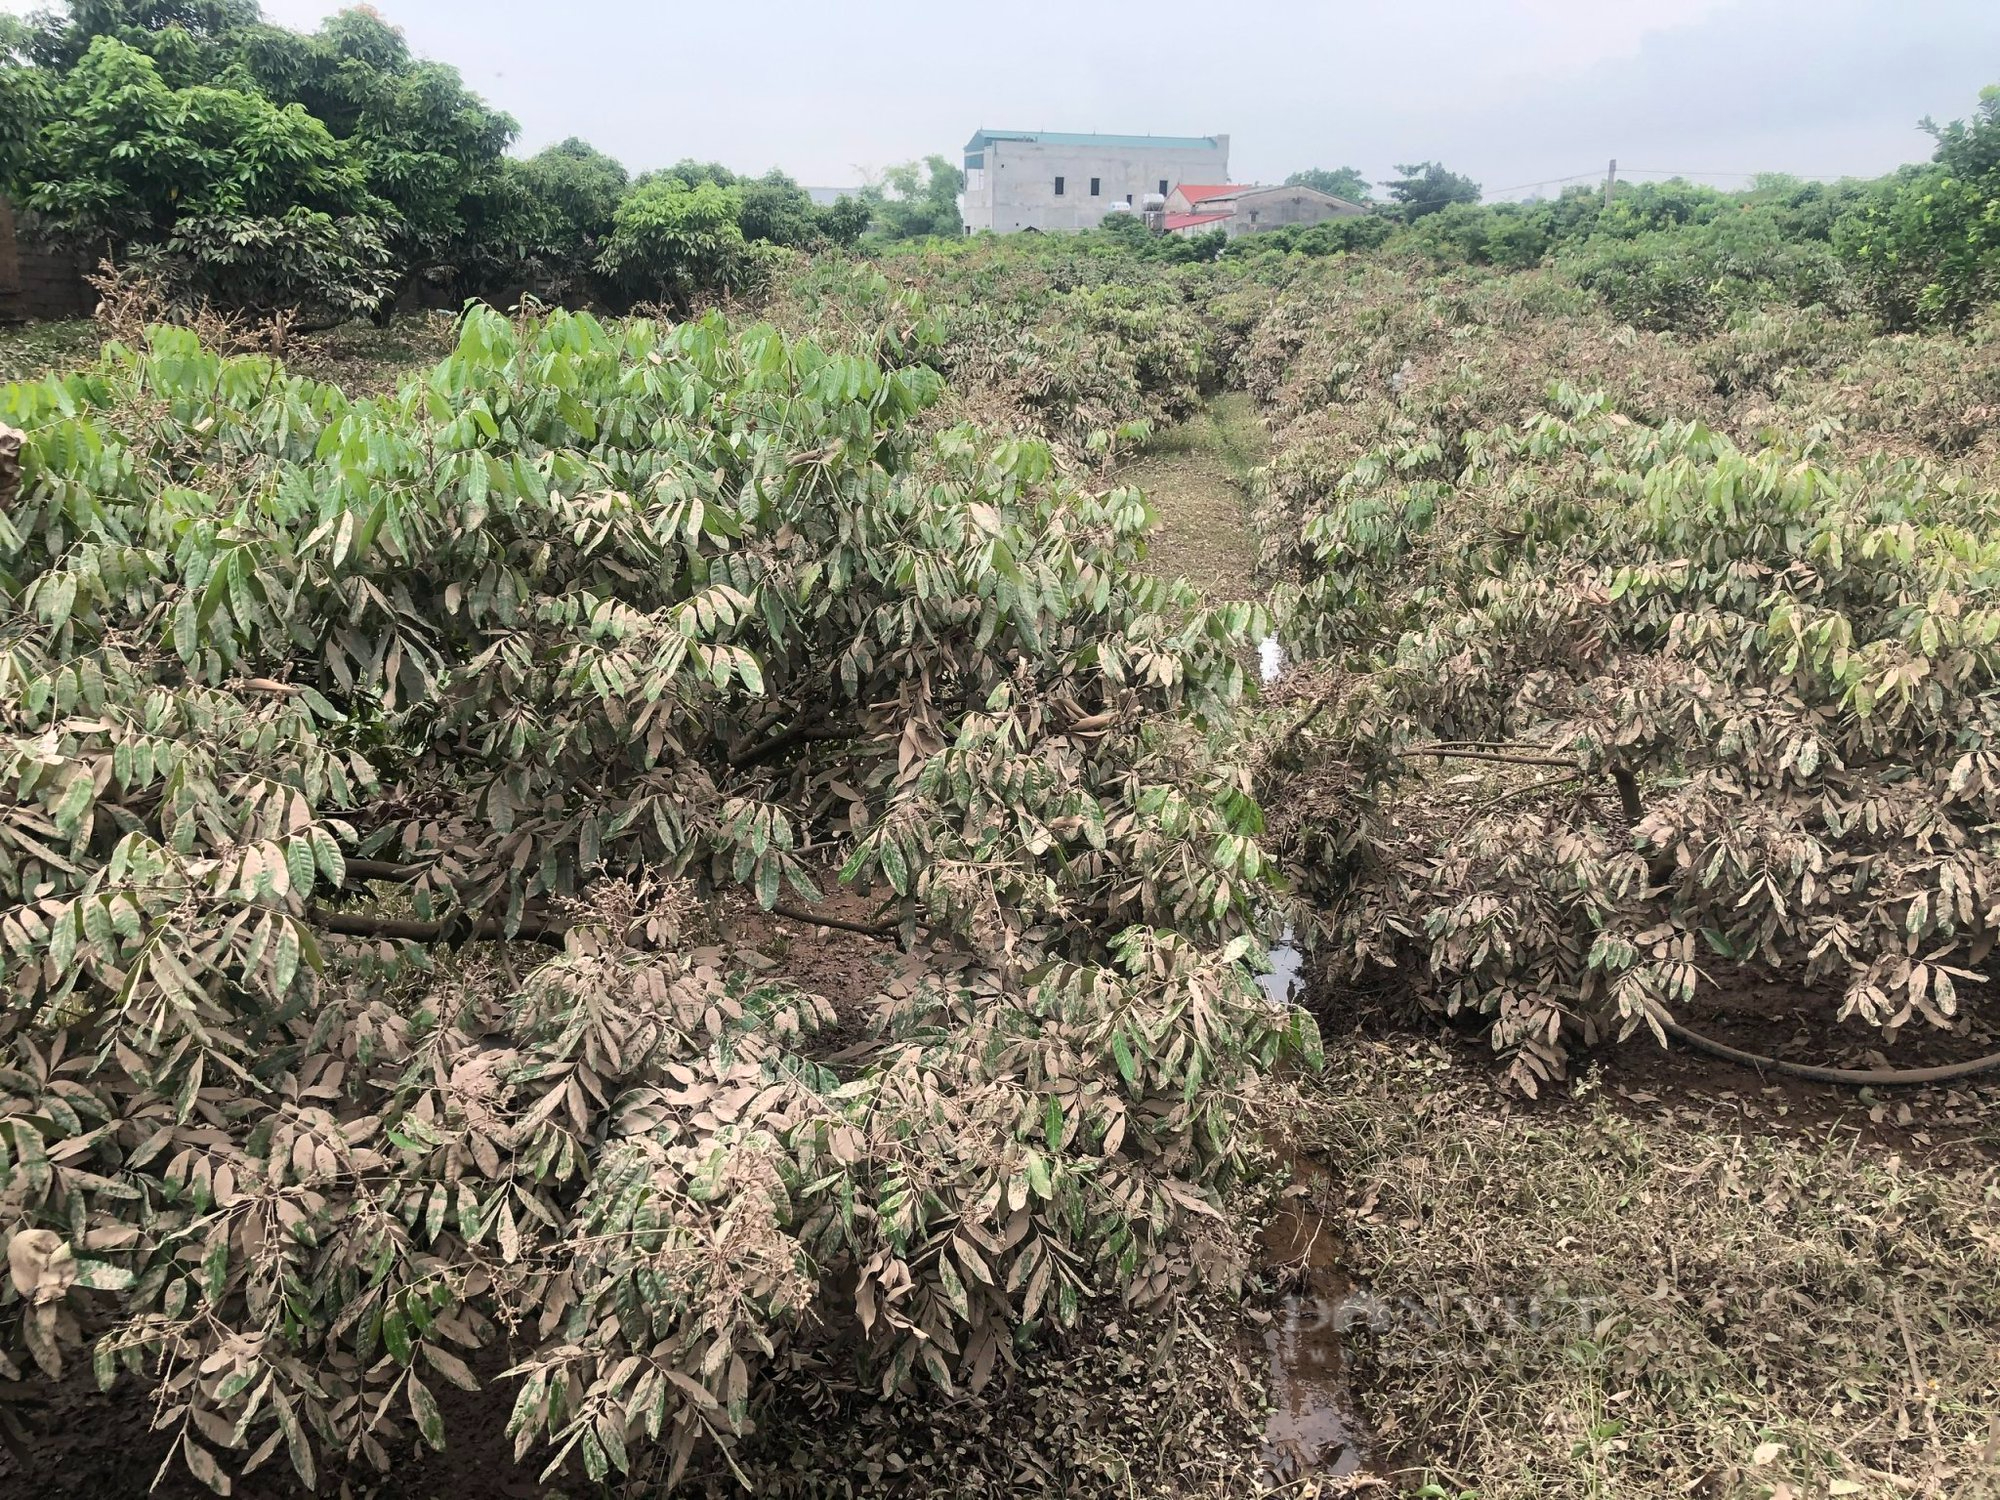 Kinh hoàng lũ quét ở Bắc Giang cuốn bật gốc cây, vườn cây nhãn, vải thiều... bị phủ kín bùn đen - Ảnh 4.